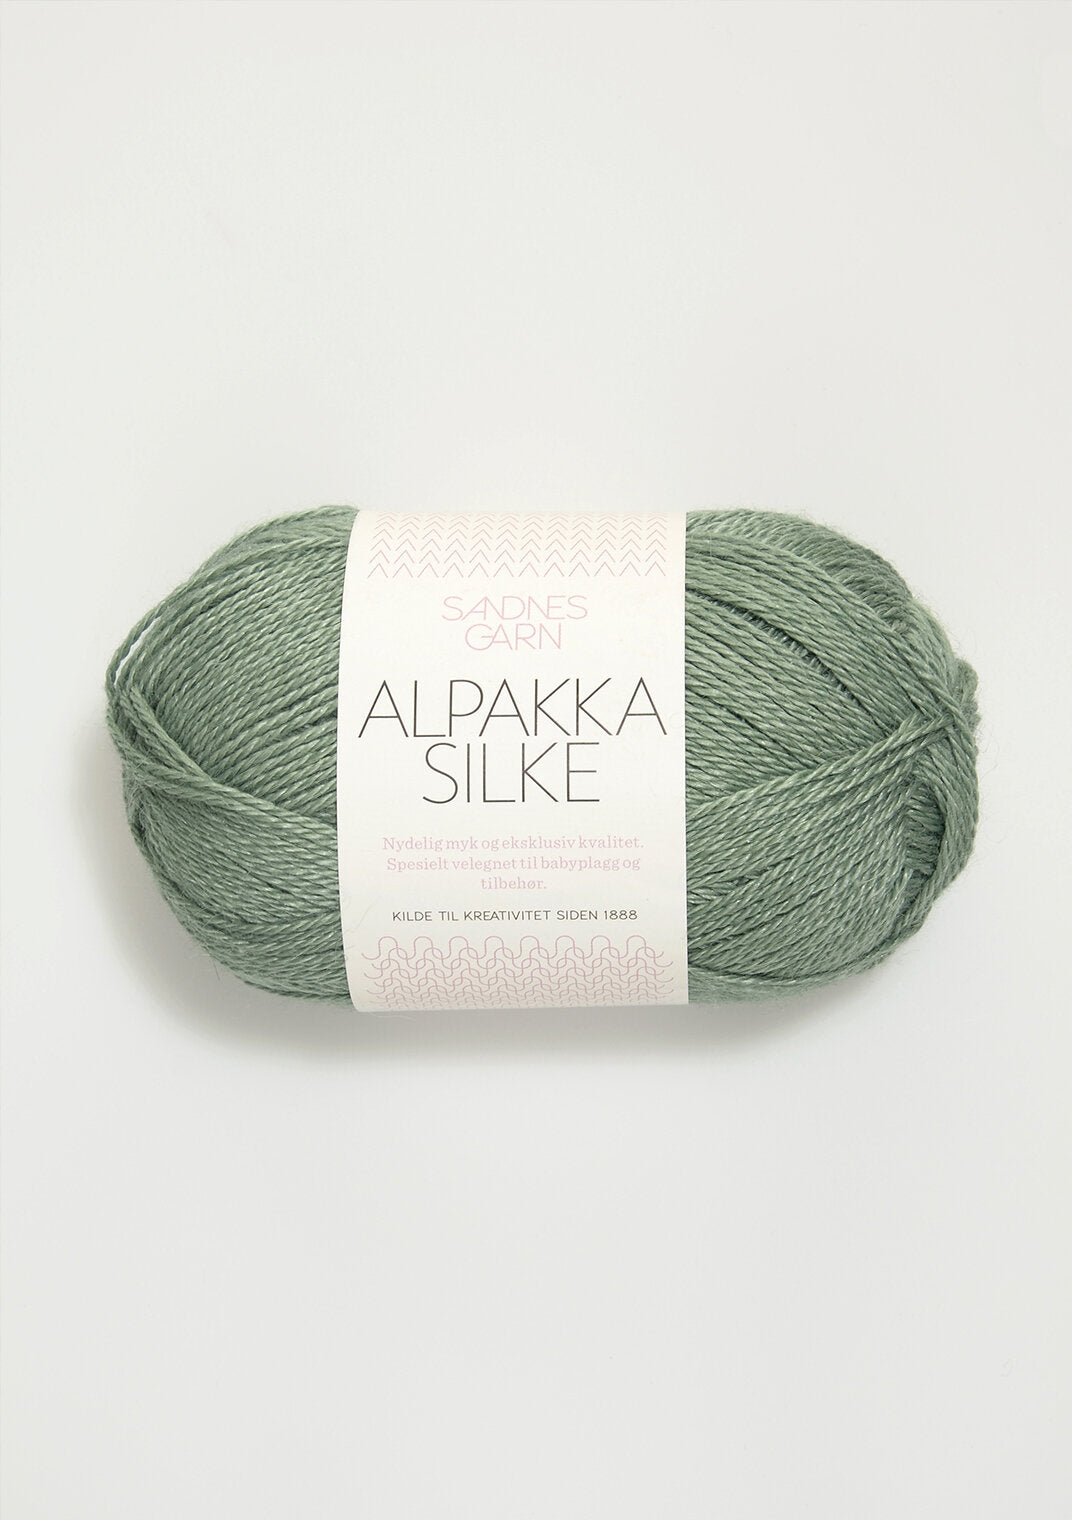 sandnes garn alpakka silke yarn 50g dusty green 7741